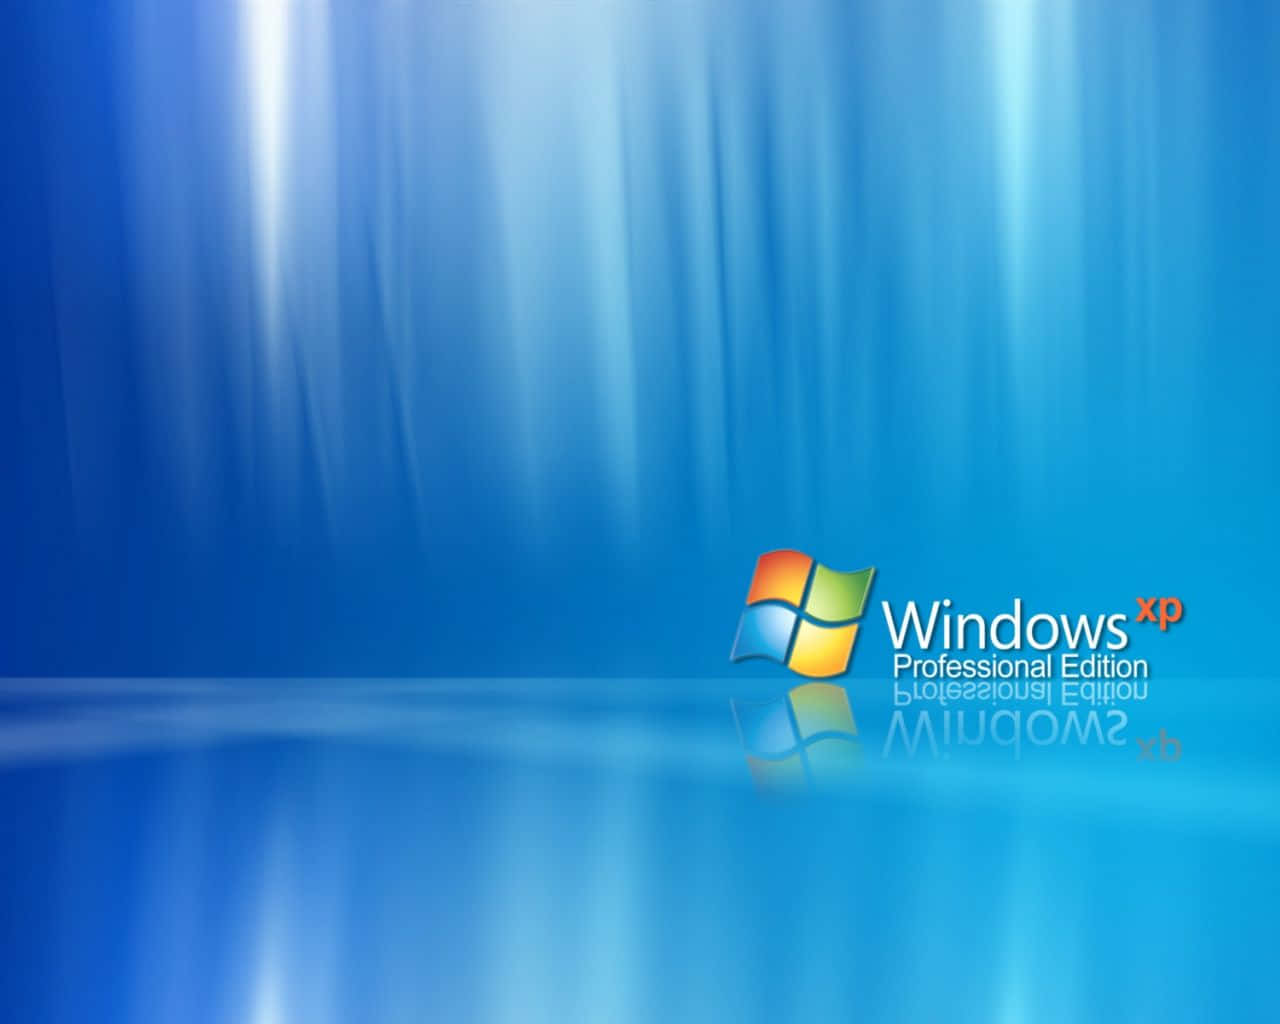 Enstationær Computer, Der Kører På Det Klassiske Windows Xp Operativsystem.